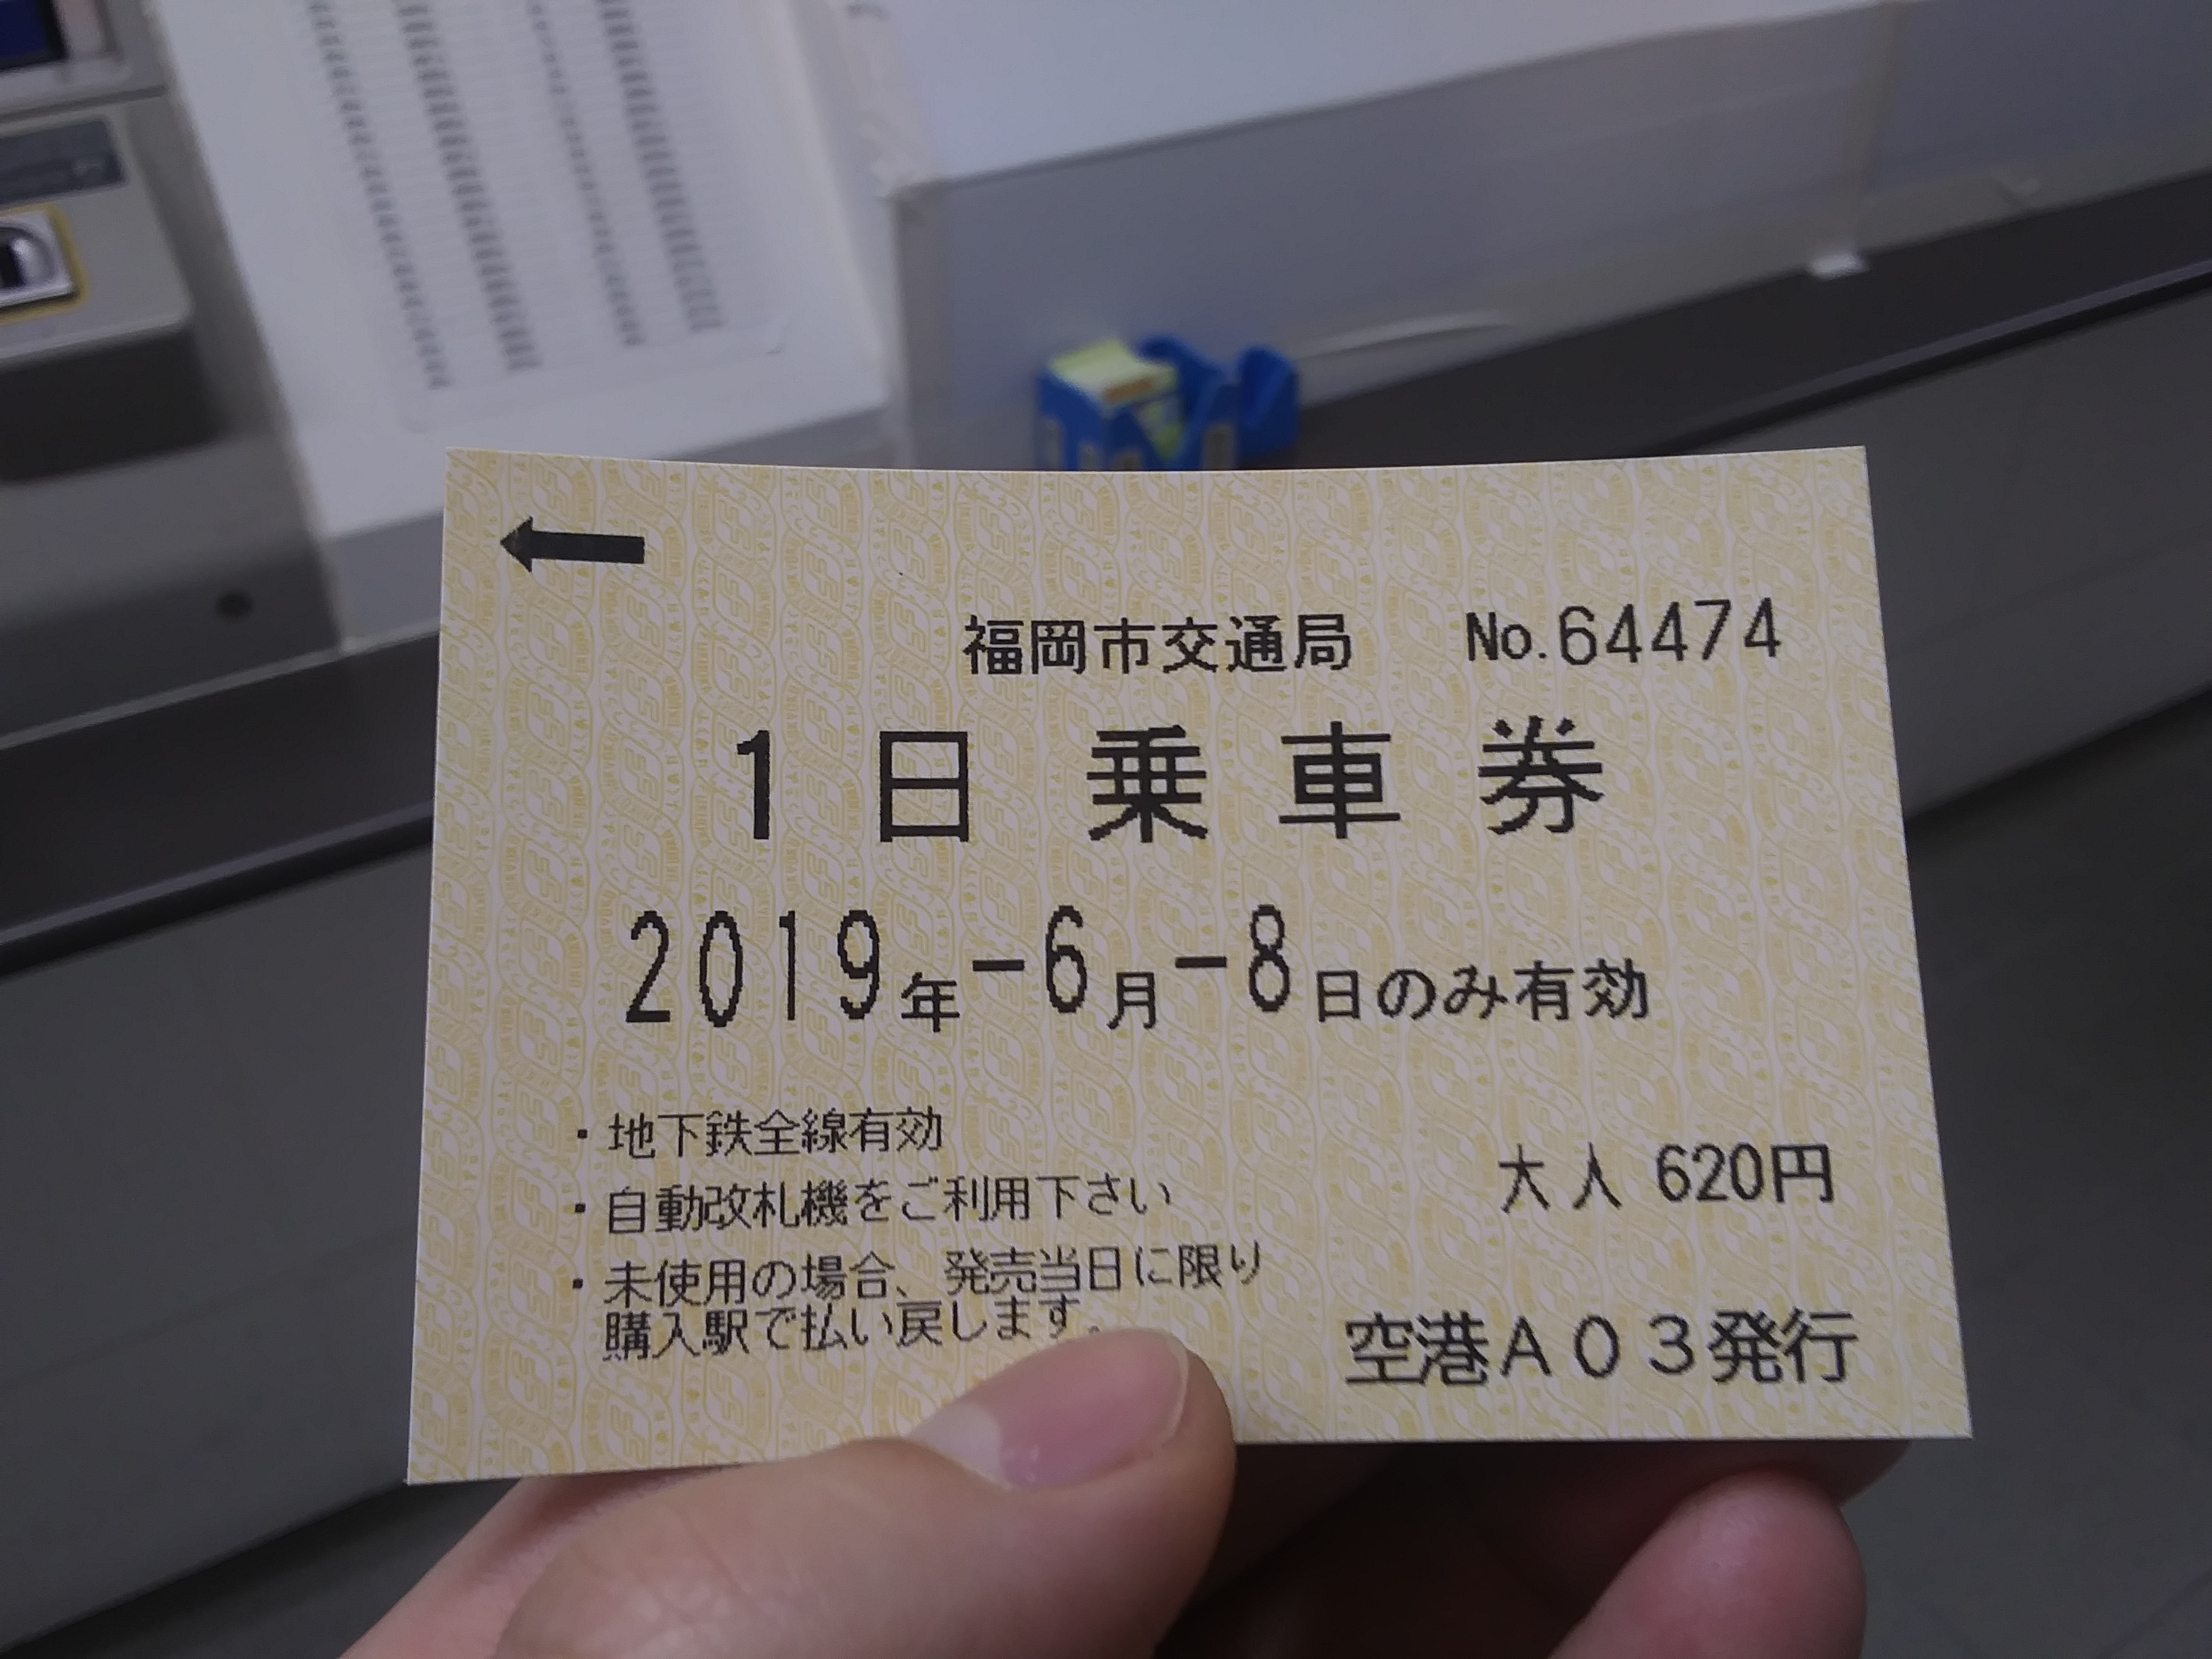 전철 티켓